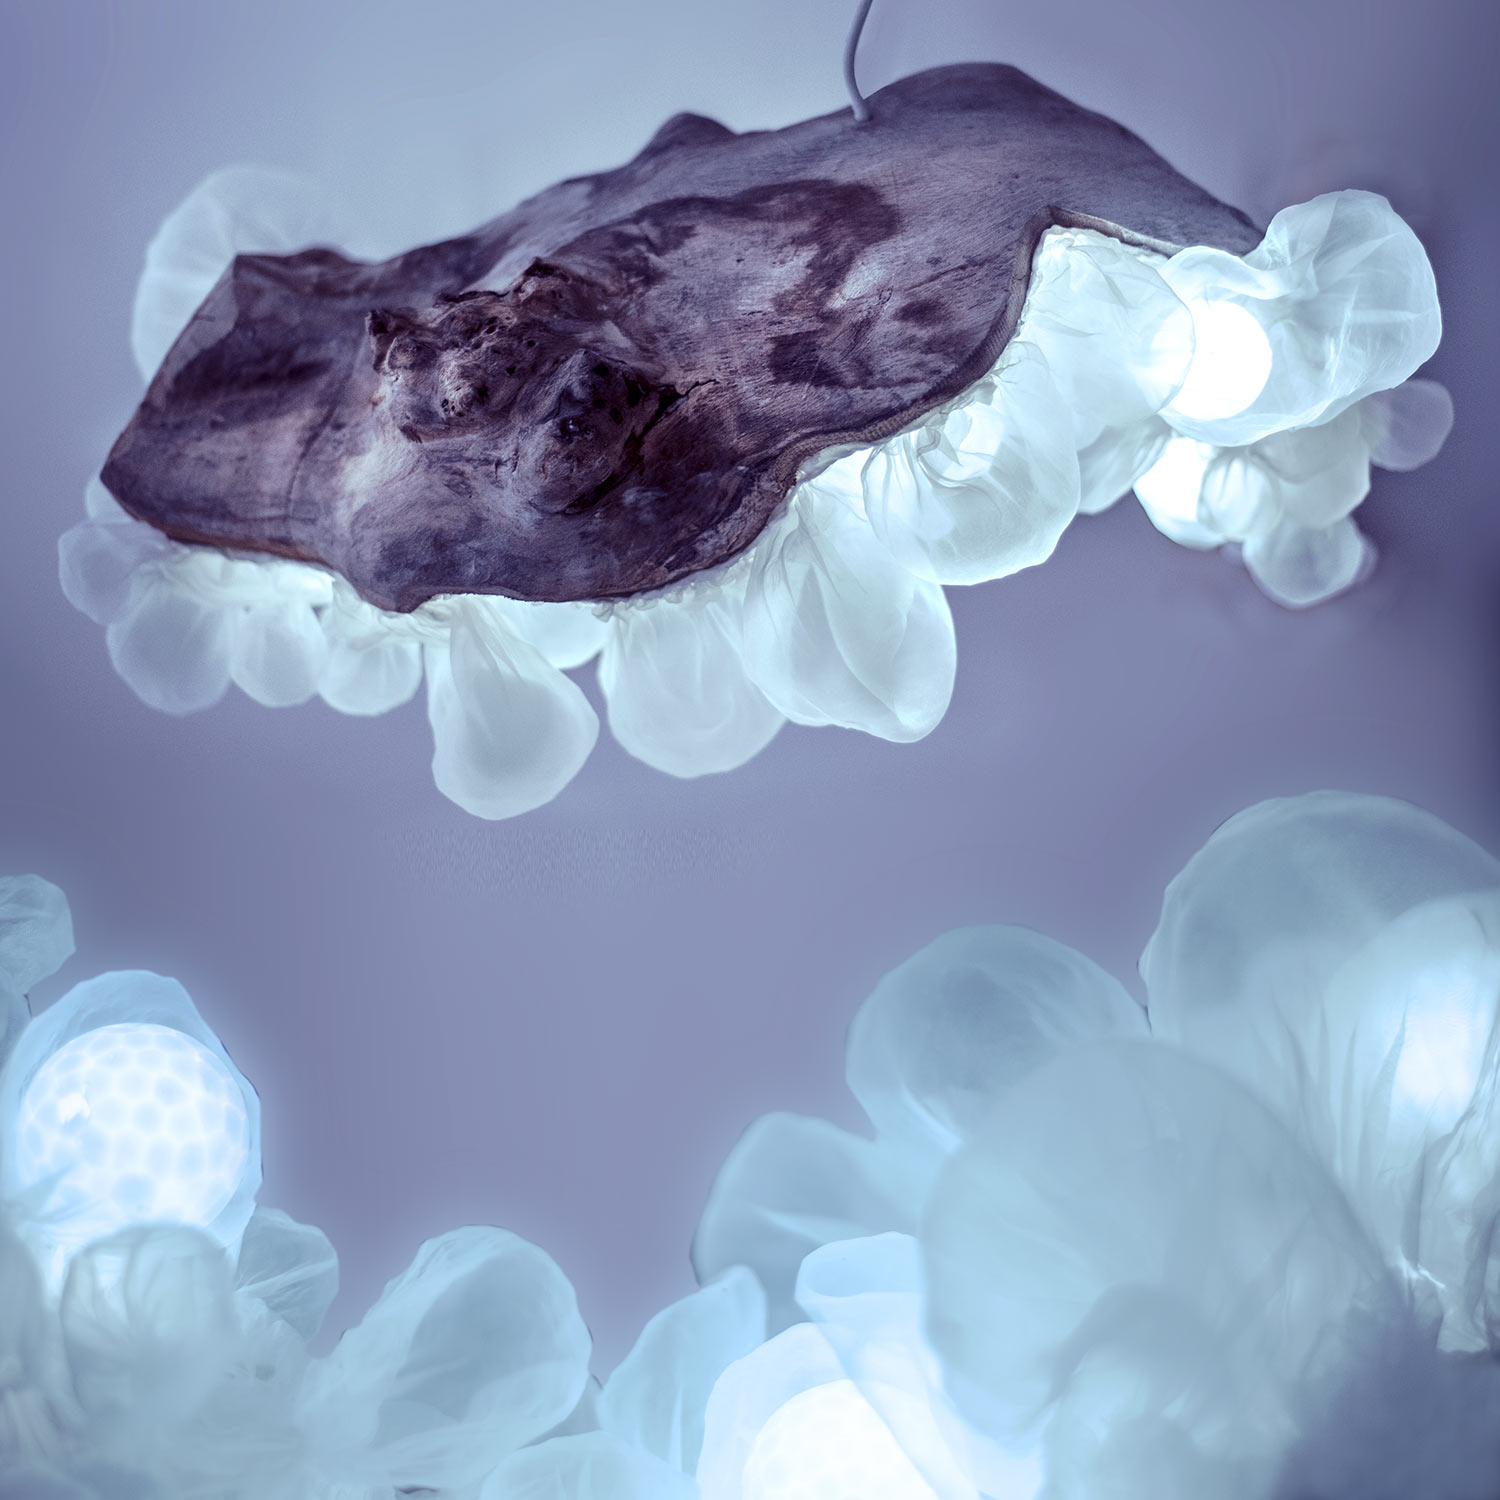 Medúza — svítící objekt Evy Spacelights Nečasové